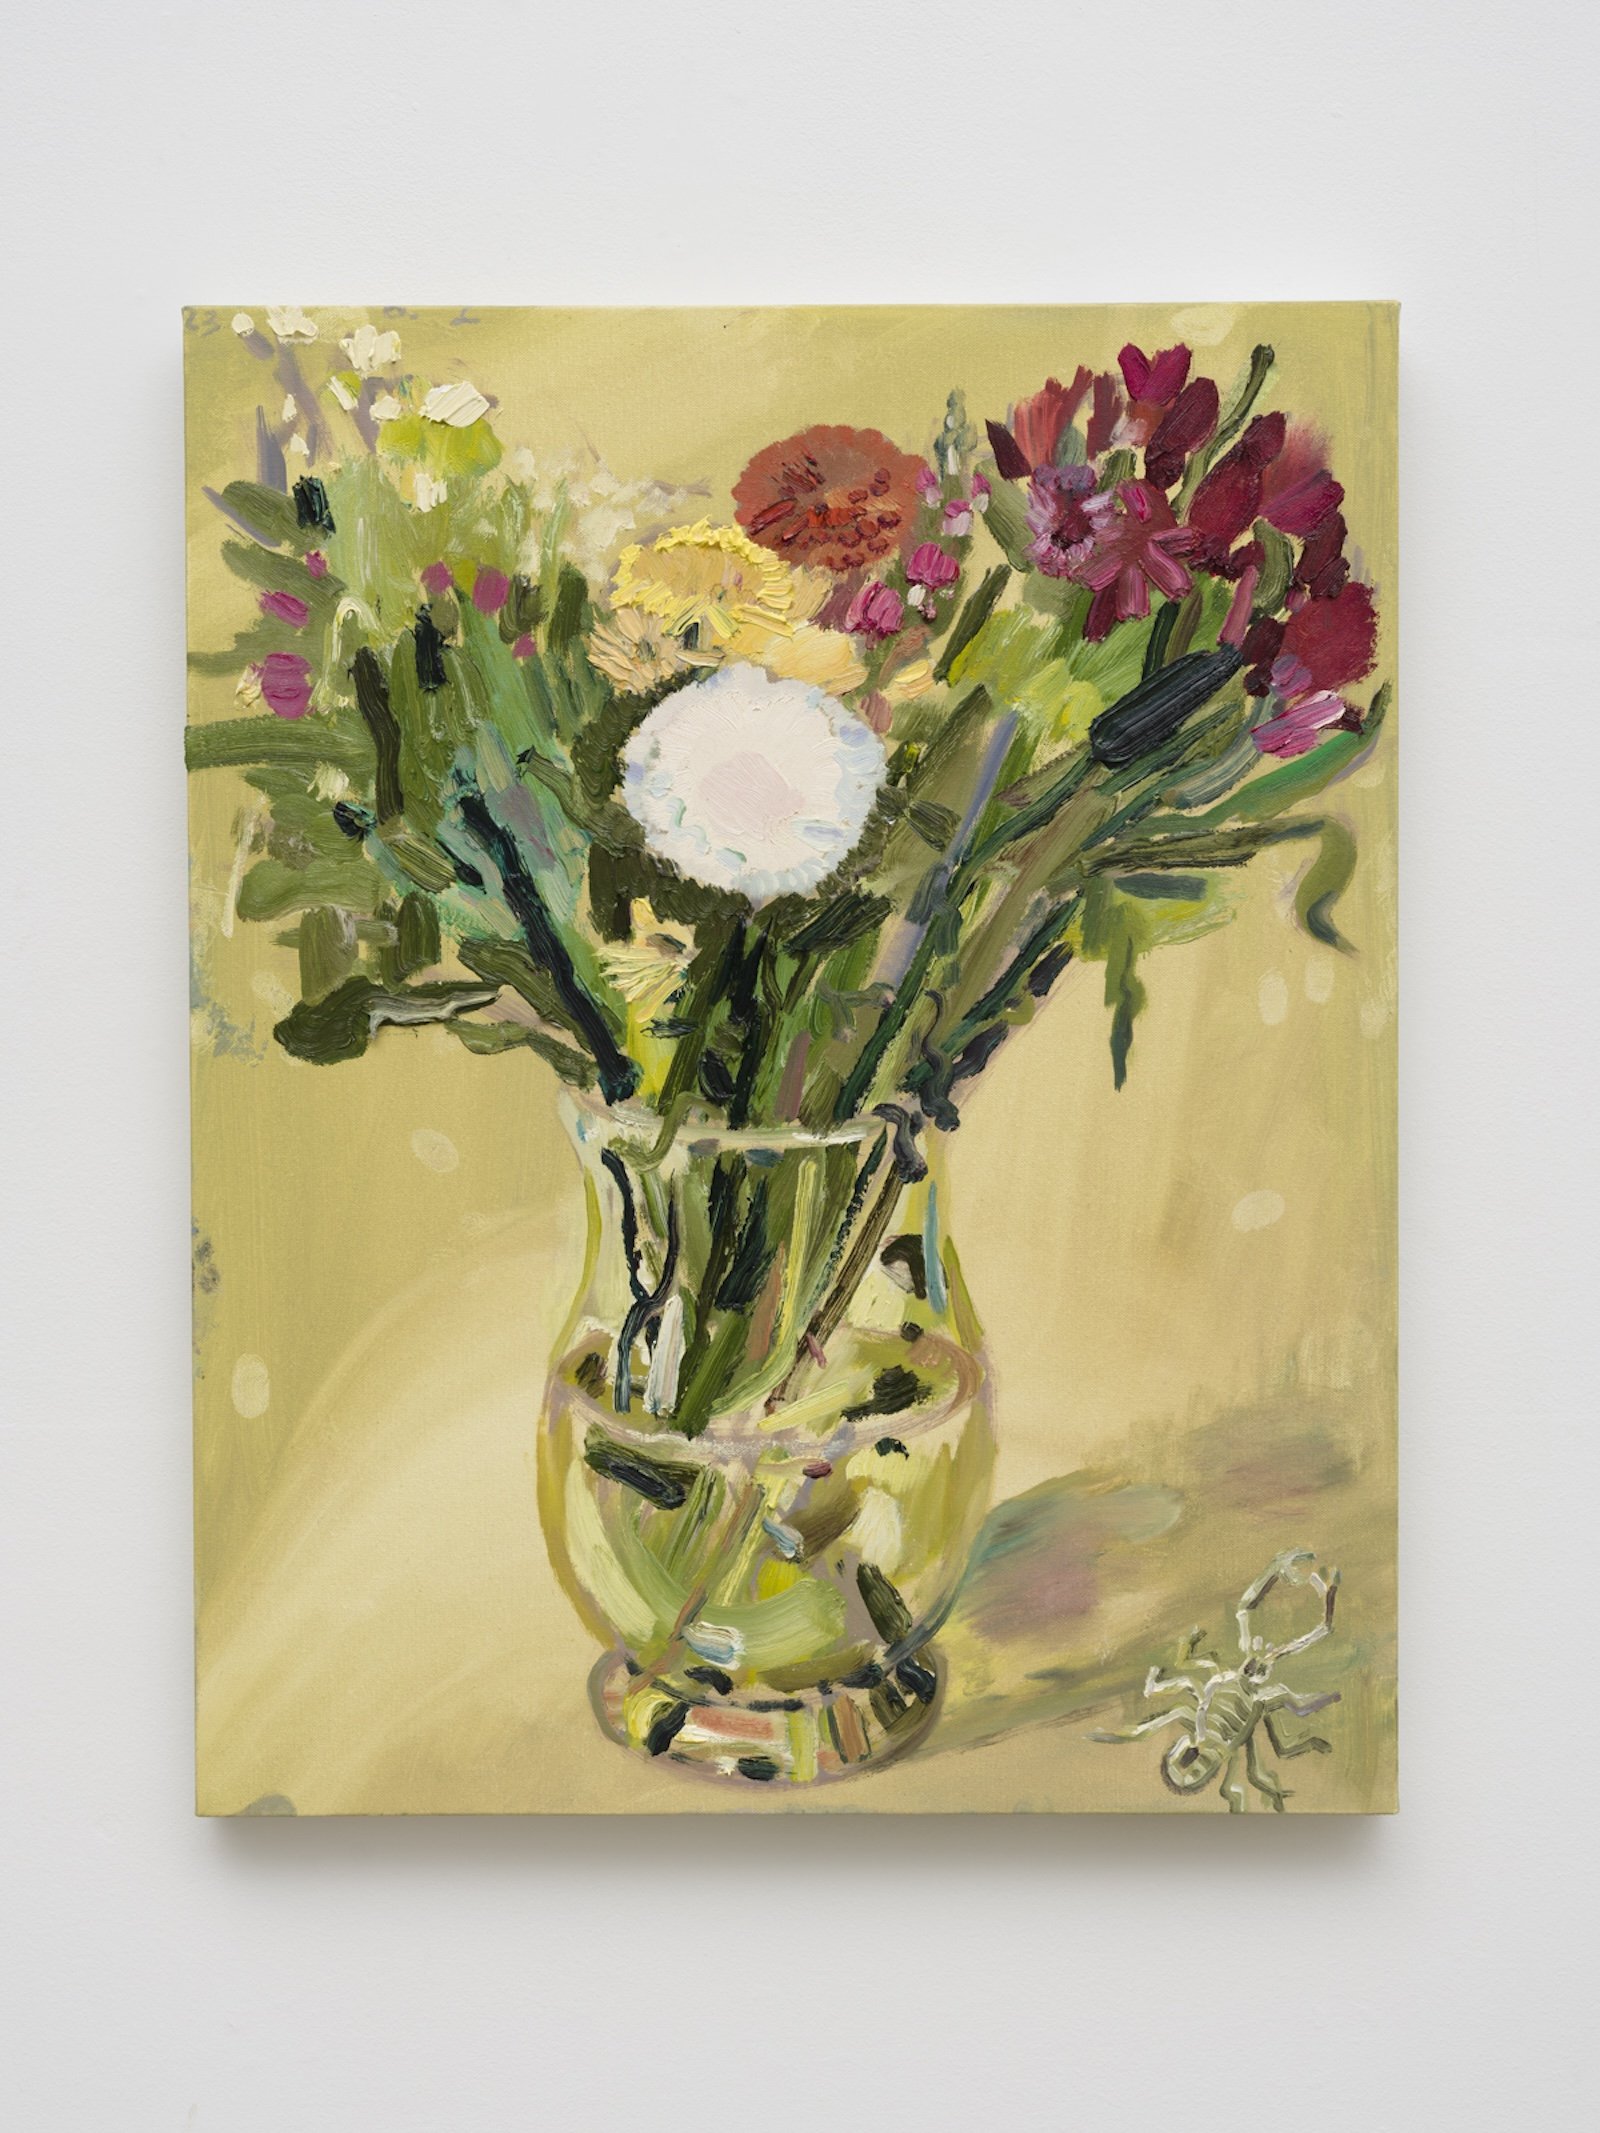  Allison Schulnik  Katy's Flowers, 2023  Oil on canvas  30 x 24 in.  76.2 x 60.96 cm 